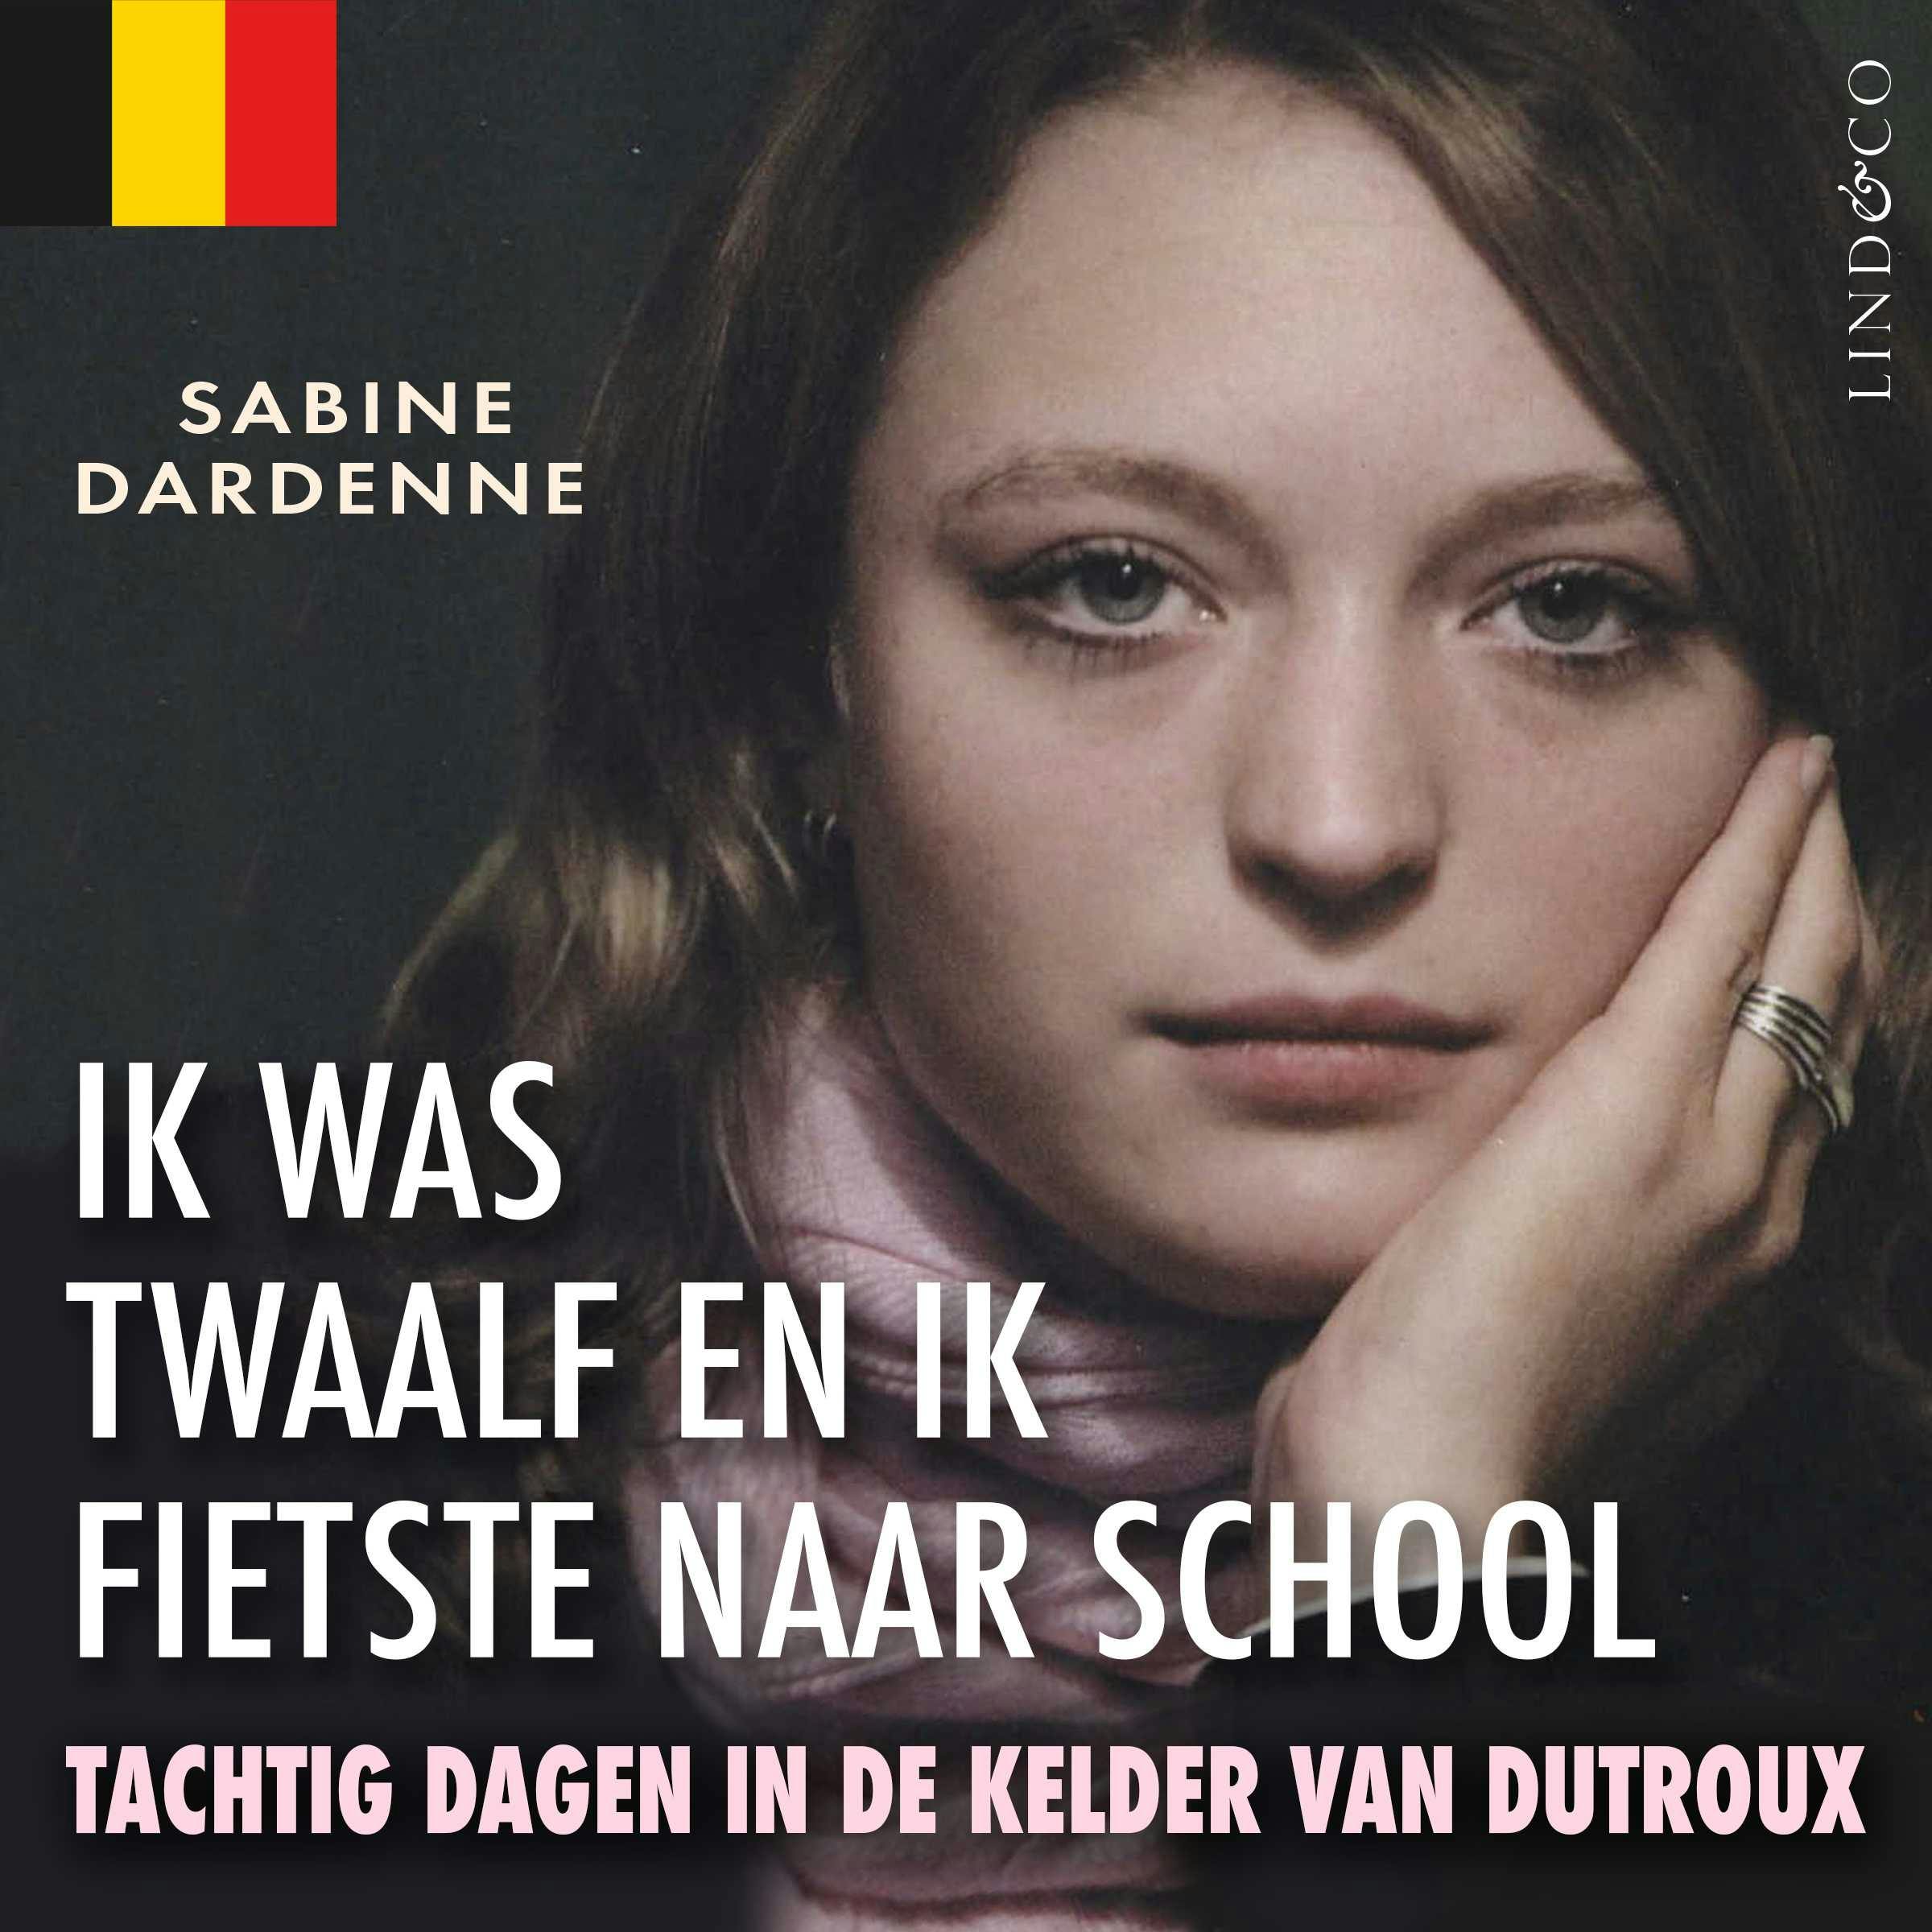 Ik was twaalf en ik fietste naar school (Vlaamse versie) - undefined